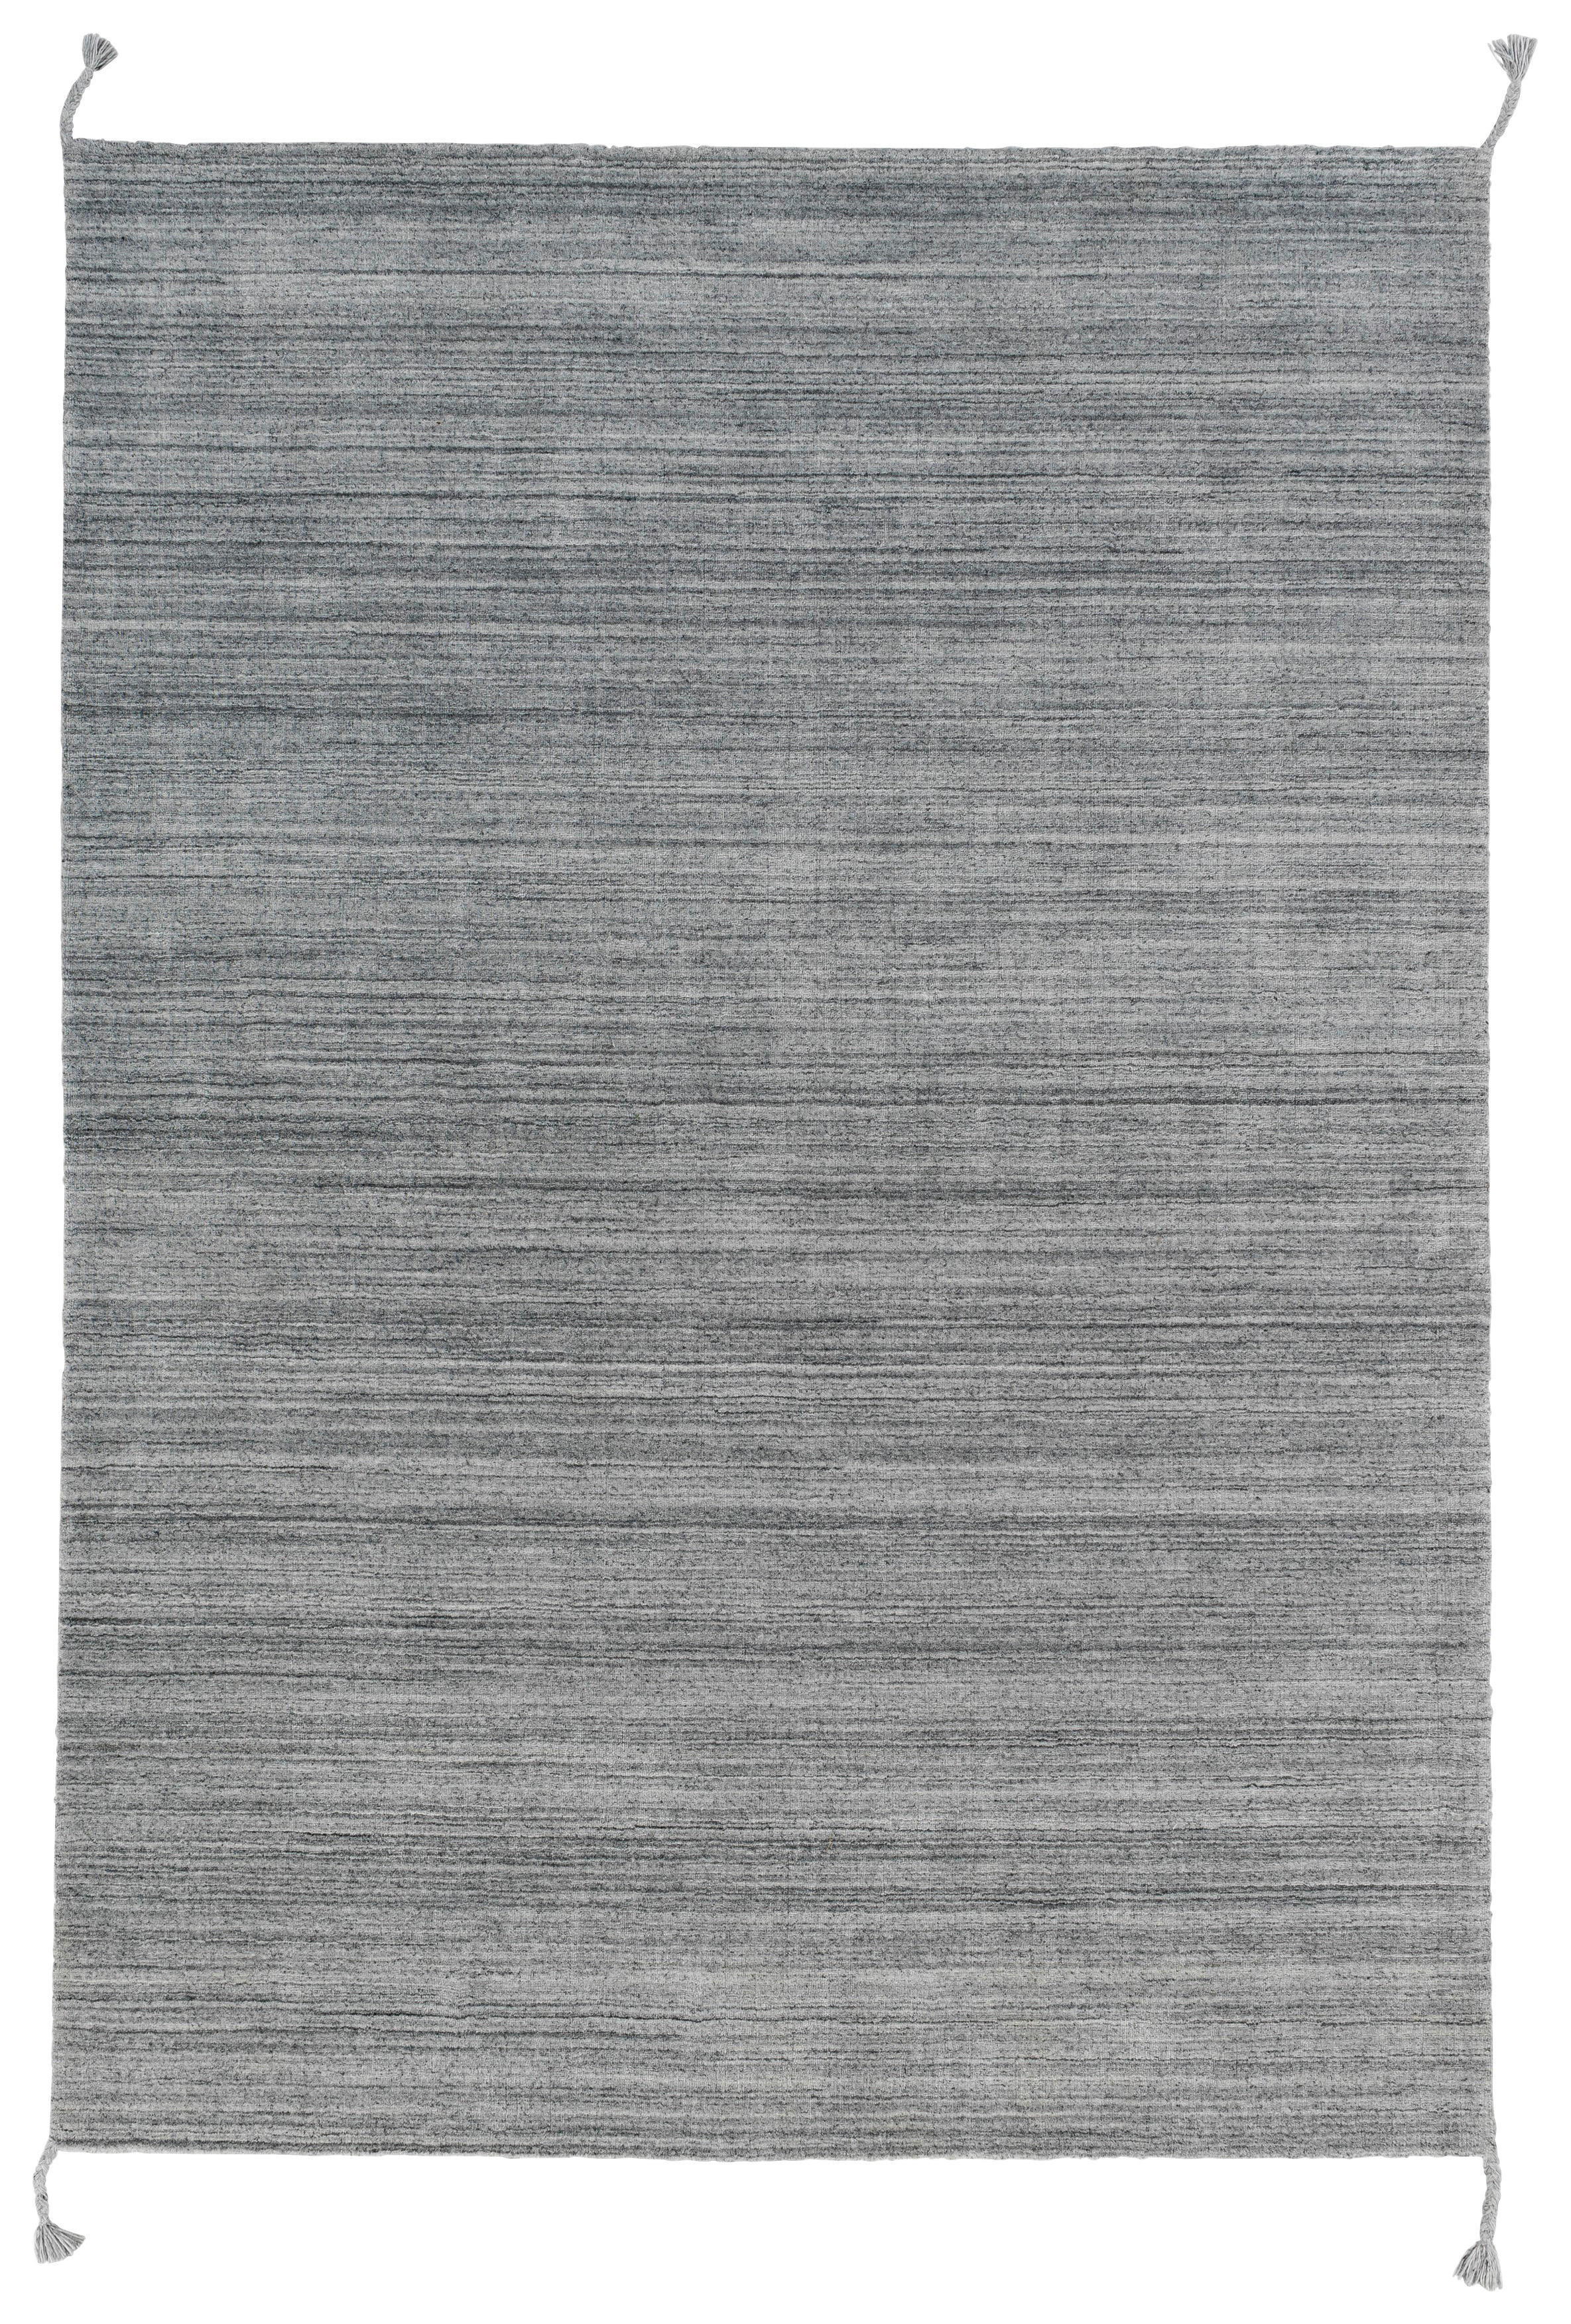 HANDWEBTEPPICH 140/200 cm  - Grau, Basics, Textil (140/200cm) - Schöner Wohnen